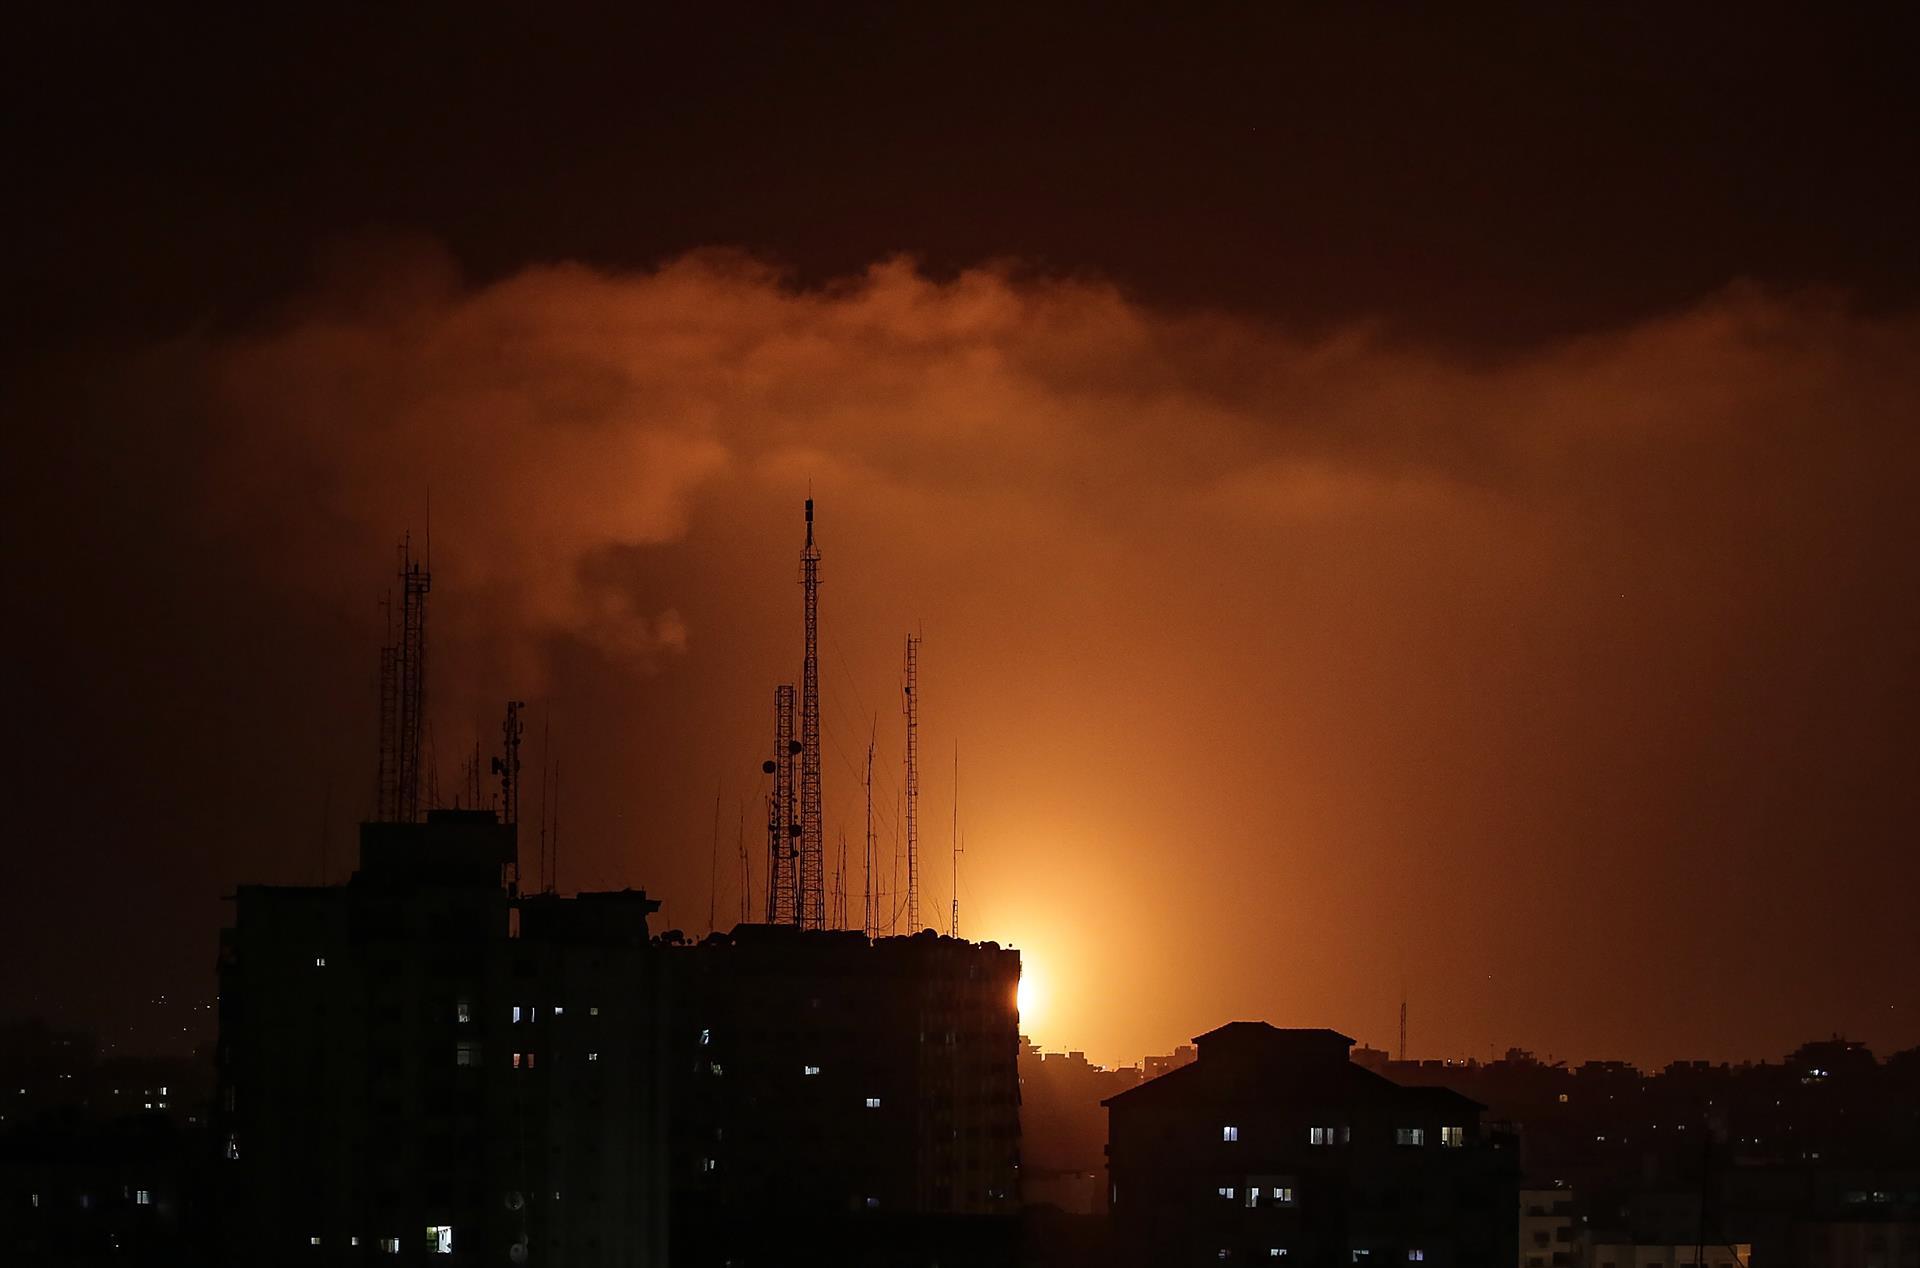 Vista de la explosión de los cohetes del ataque israelí en la ciudad de Gaza, en la Franja de Gaza este martes. Los disparos de cohetes desde Gaza y los bombardeos israelíes contra objetivos de las milicias armadas en el enclave continuaron durante la noche y elevaron al menos a 22 los muertos (Foto: EFE/ Mohammed Saber)